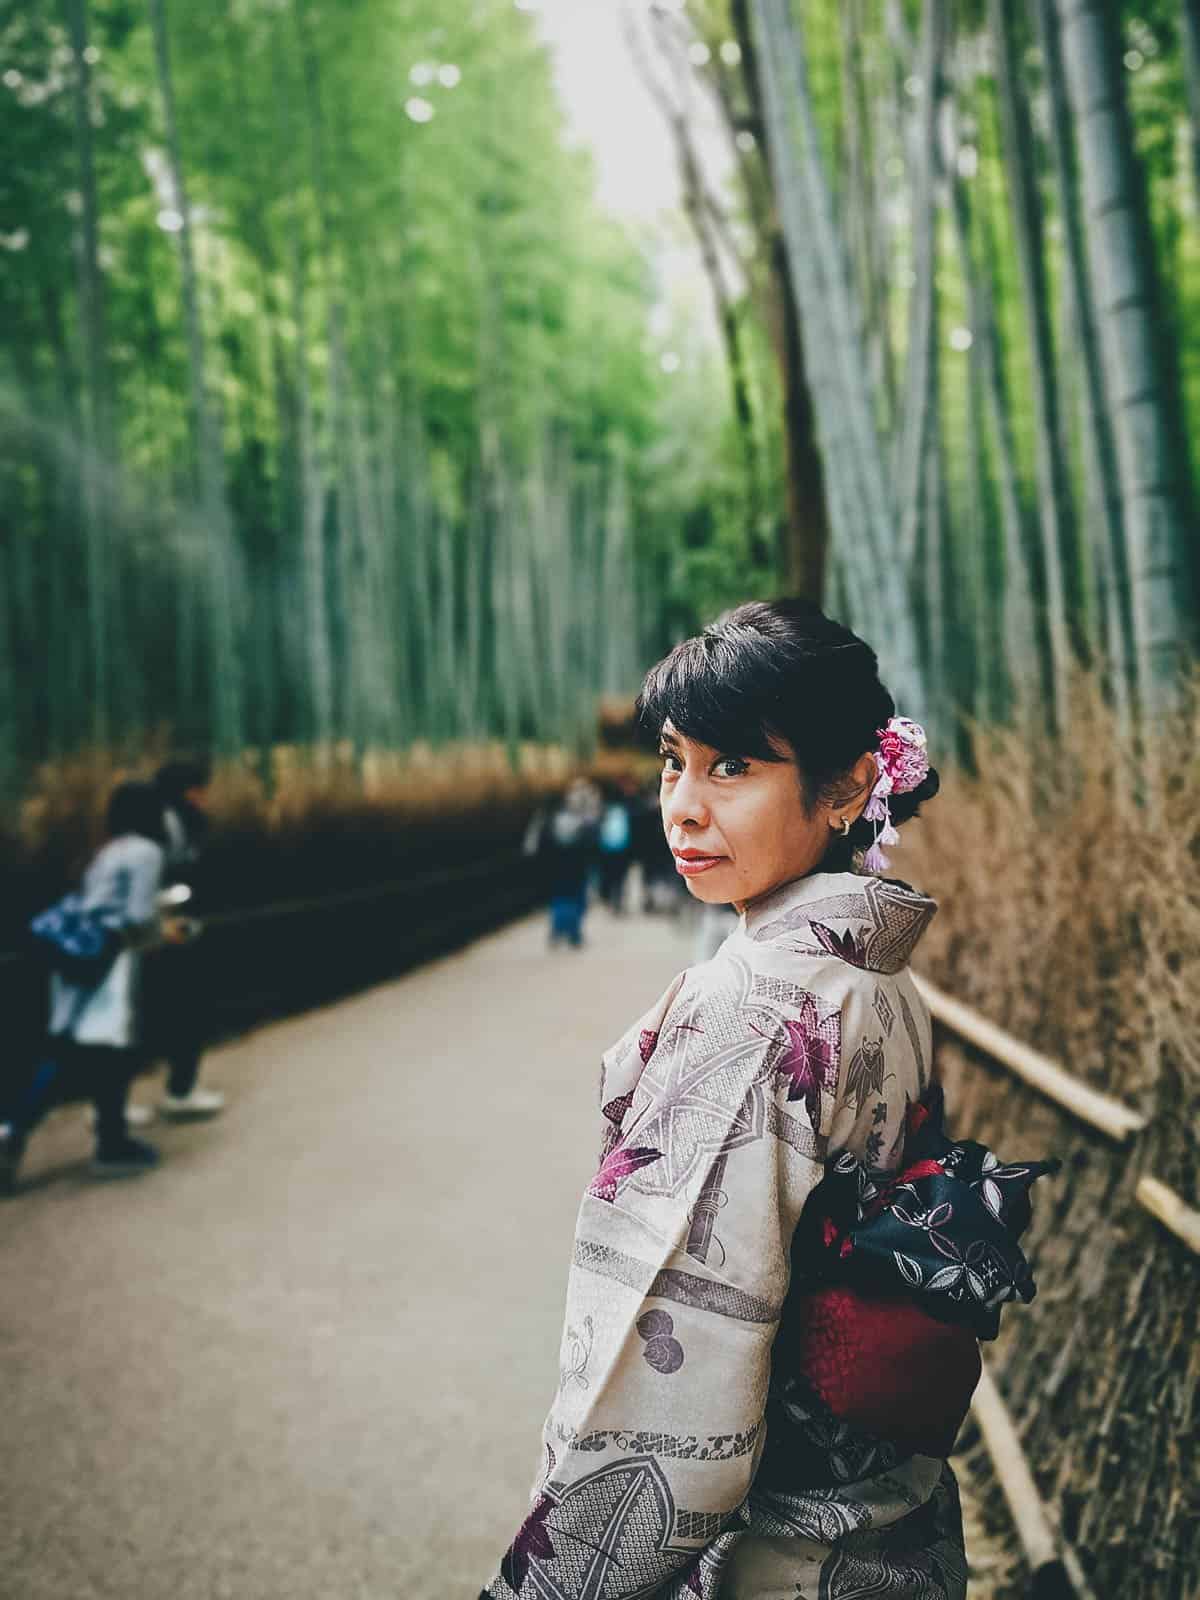 Ren in a kimono at Arashiyama Bamboo Garden